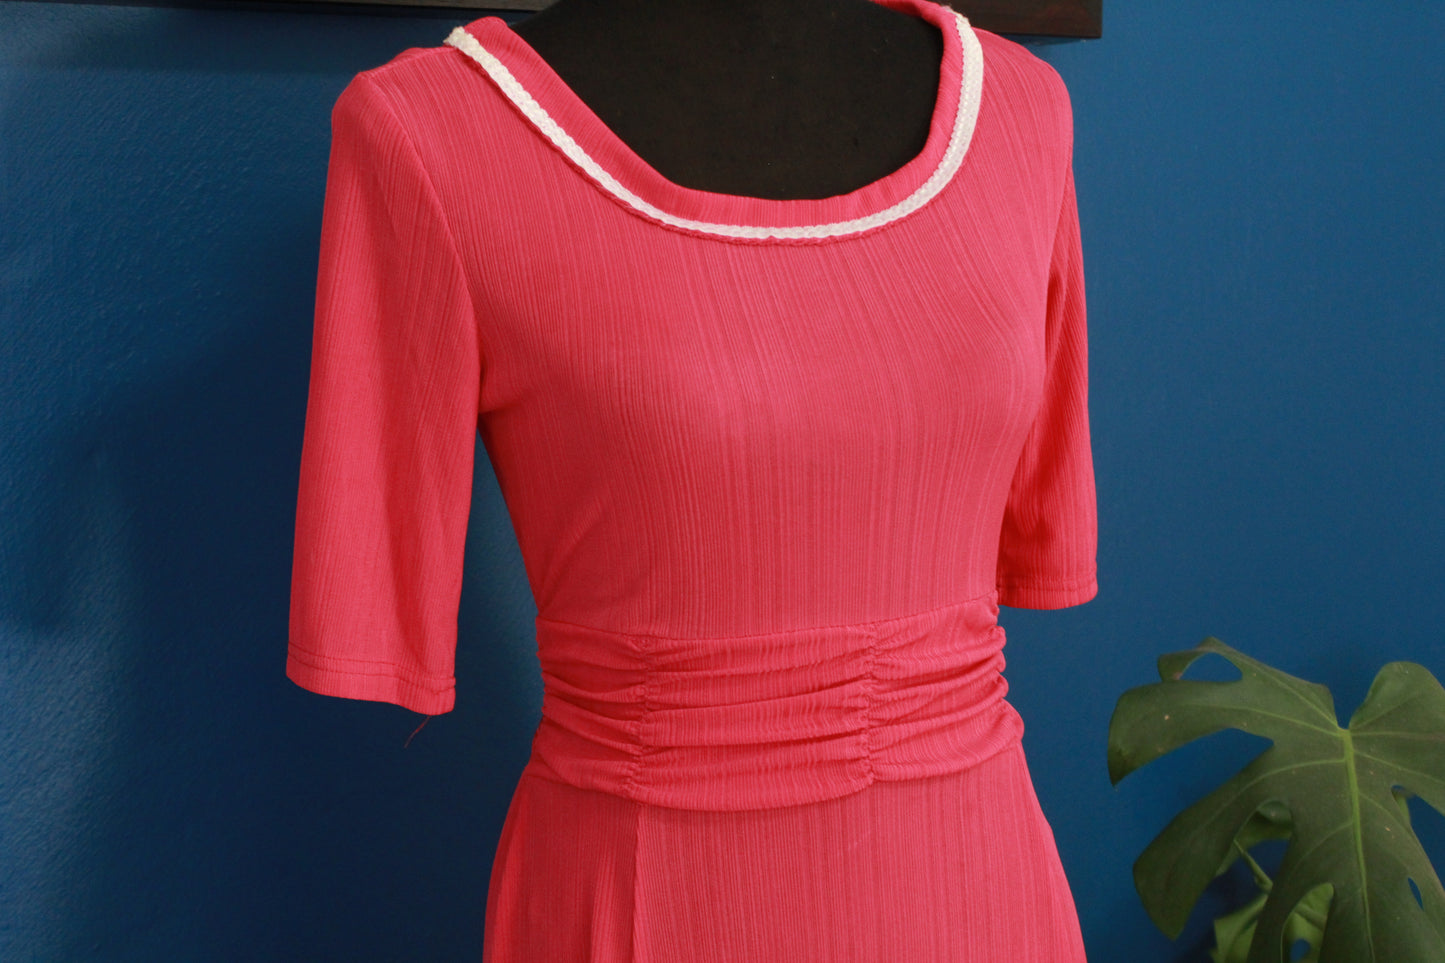 Vintage short sleeved pink dress